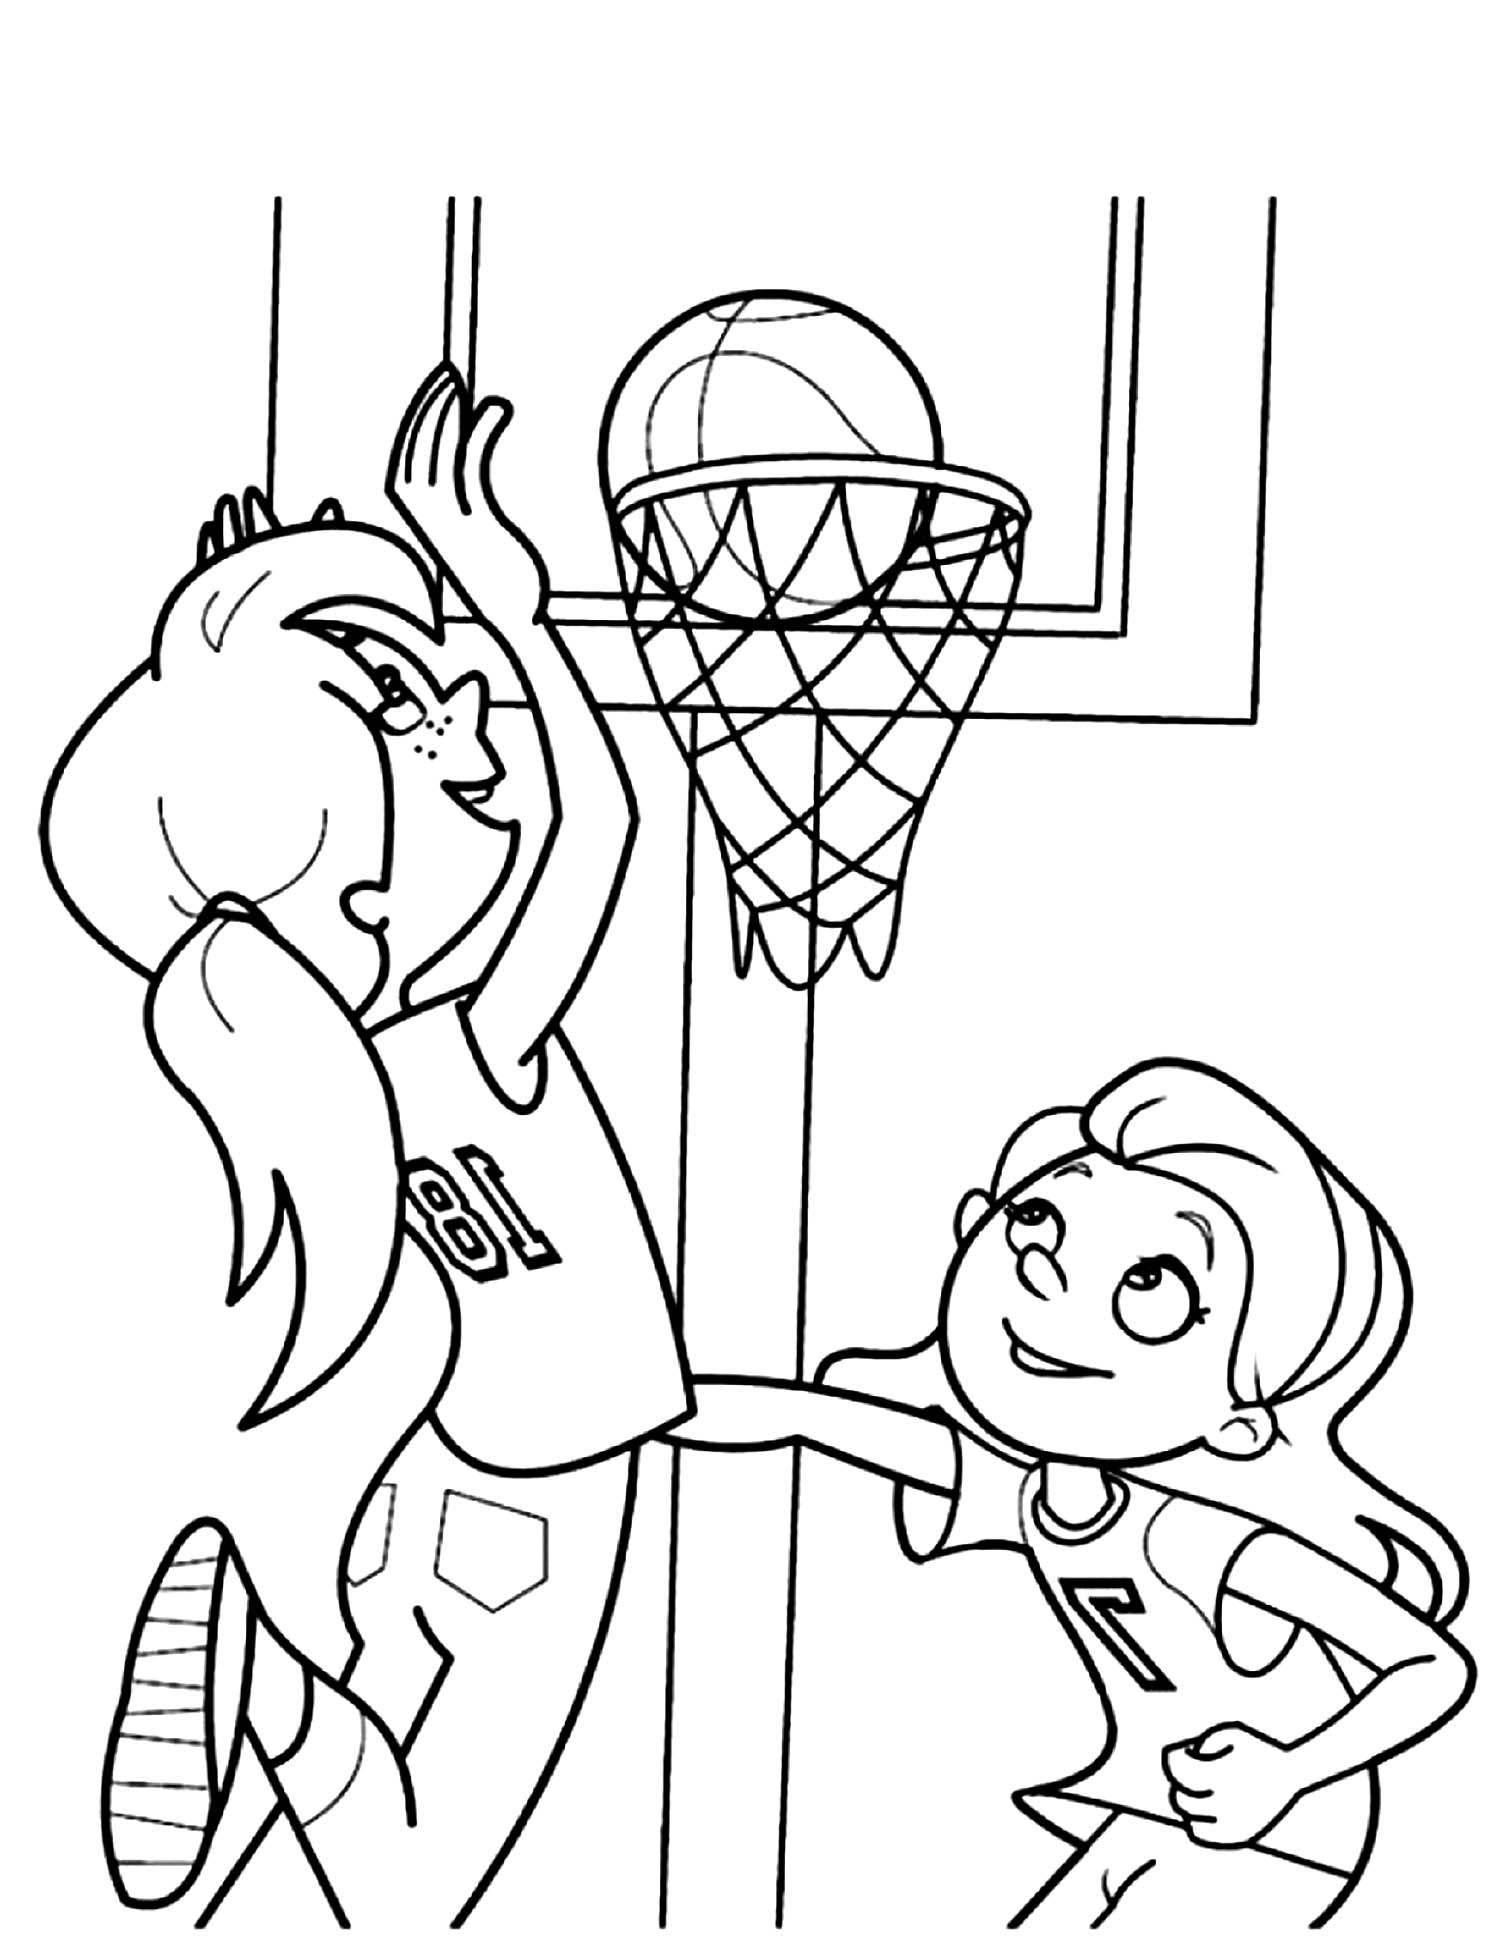 Página para colorear de Niñas jugando al baloncesto - Letscolorit.com